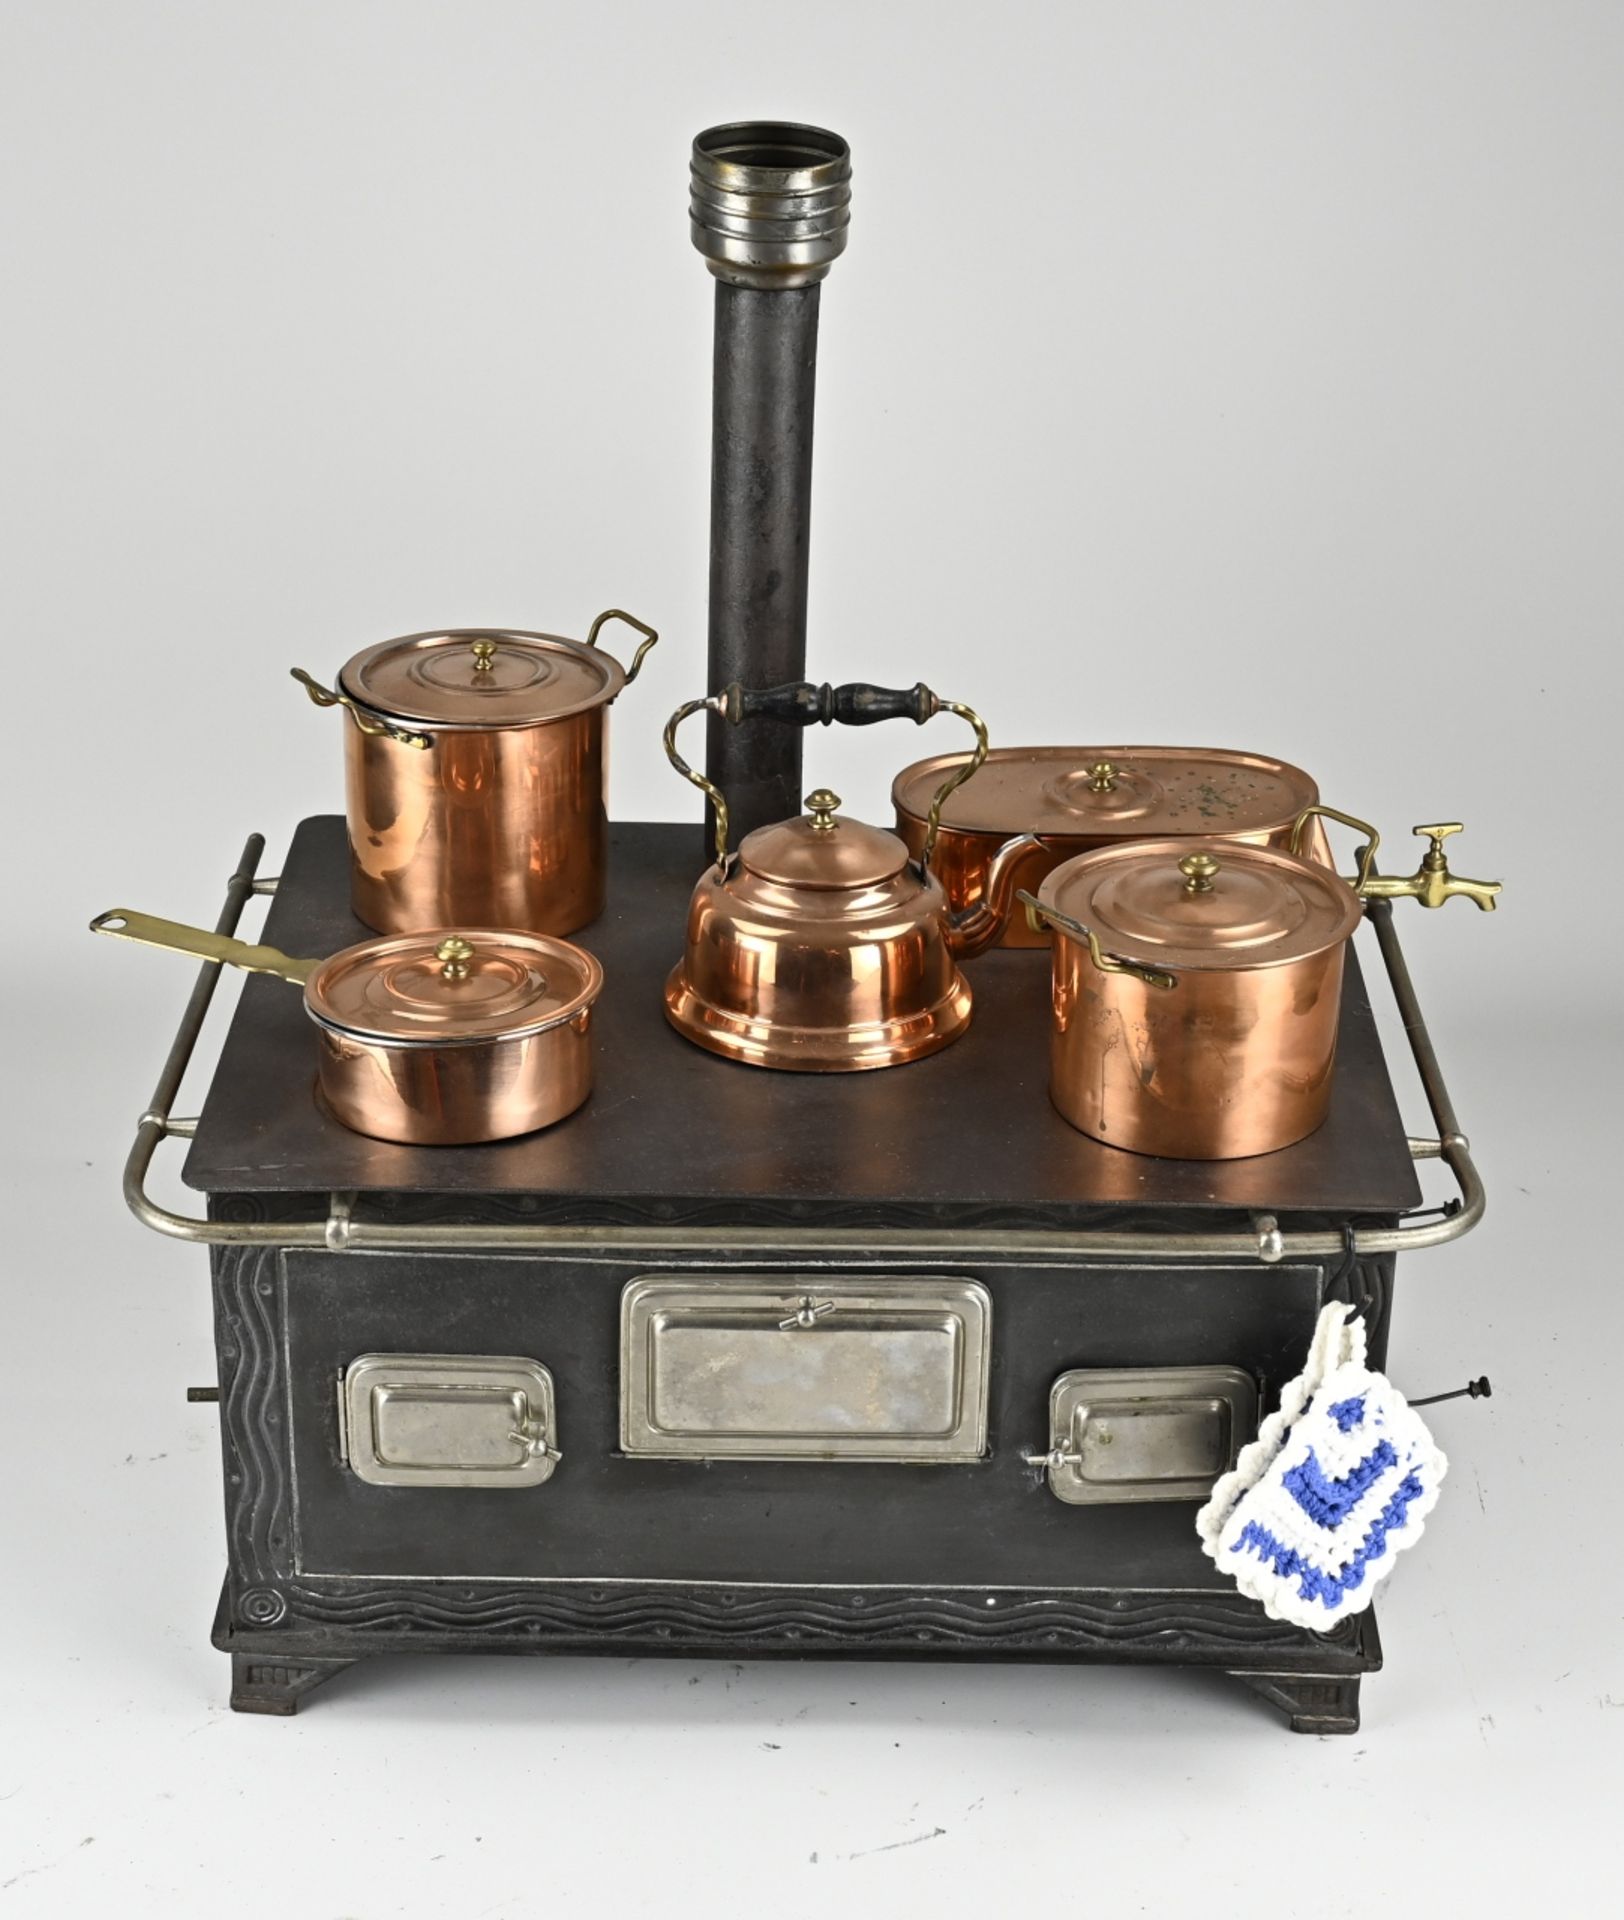 Children's stove + copper pans